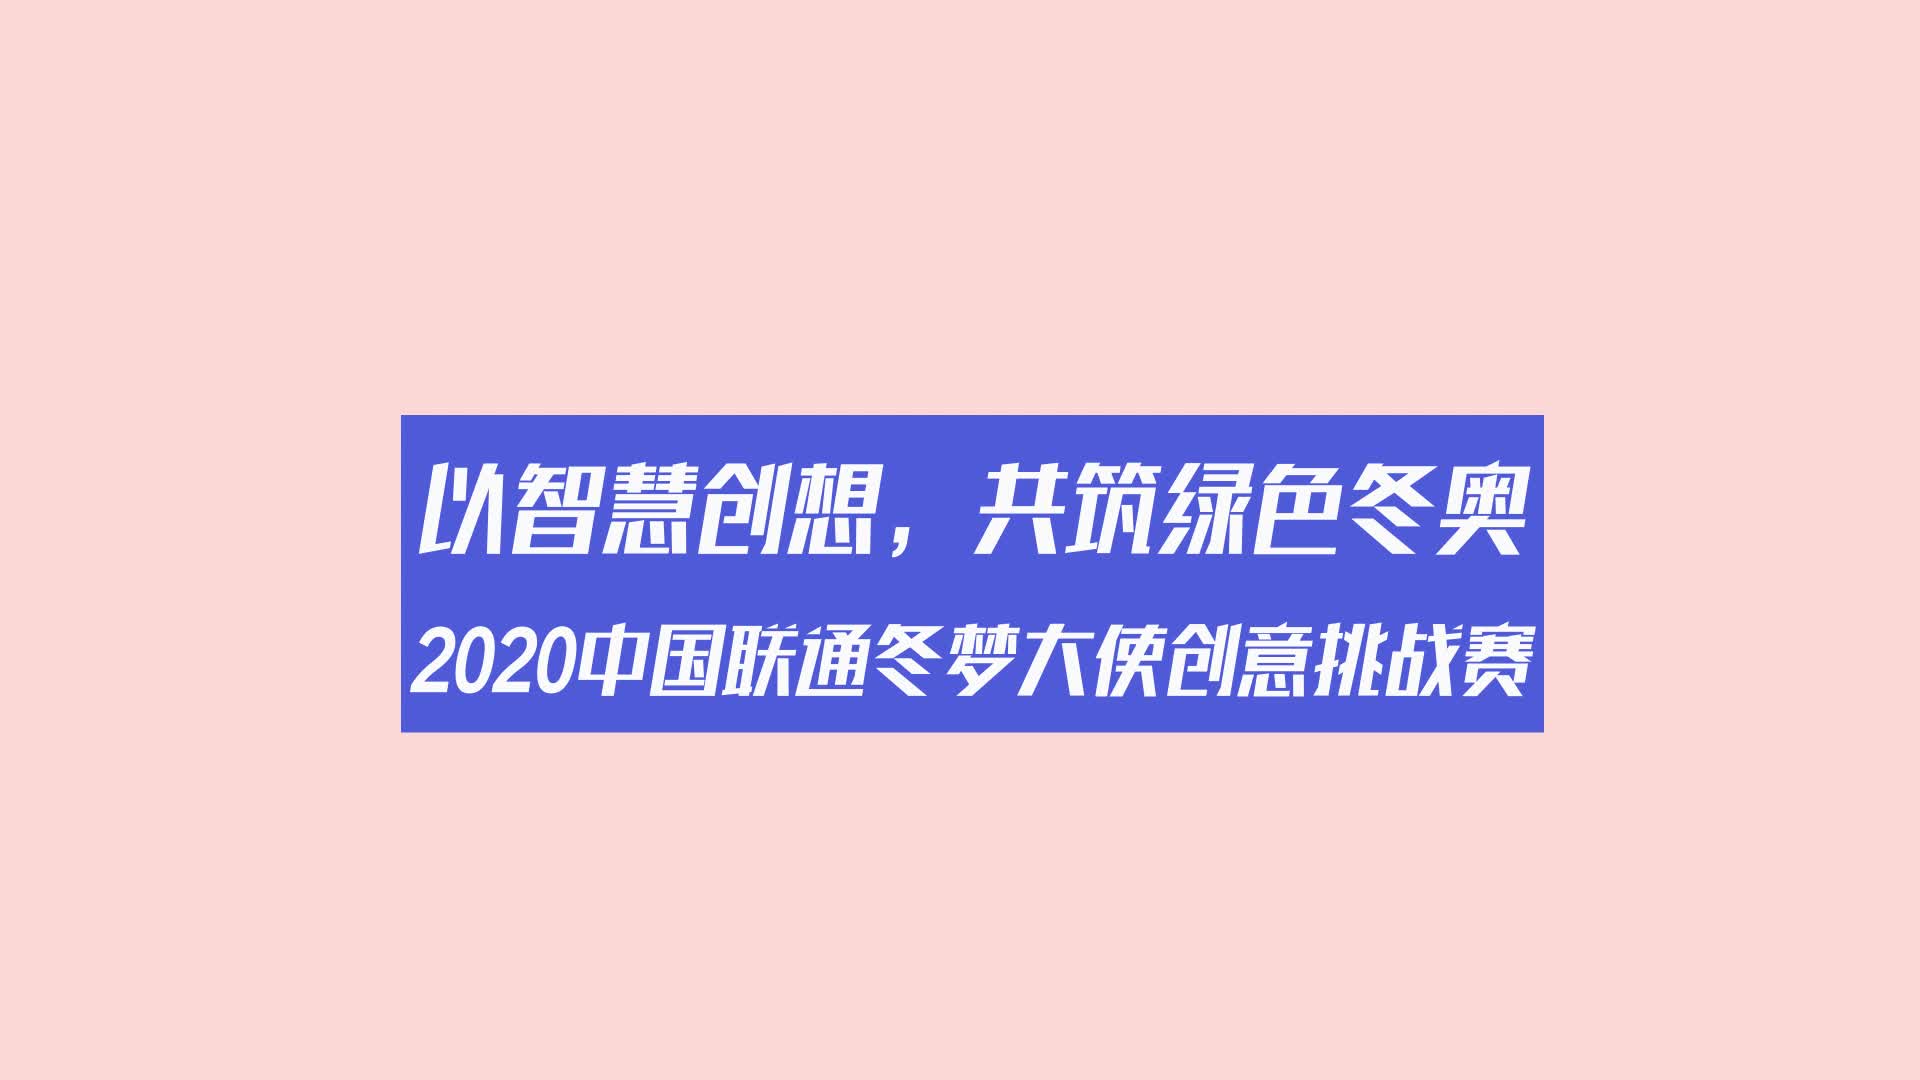 2020中国联通冬梦大使创意挑战赛智慧工坊金句大放送最终弹